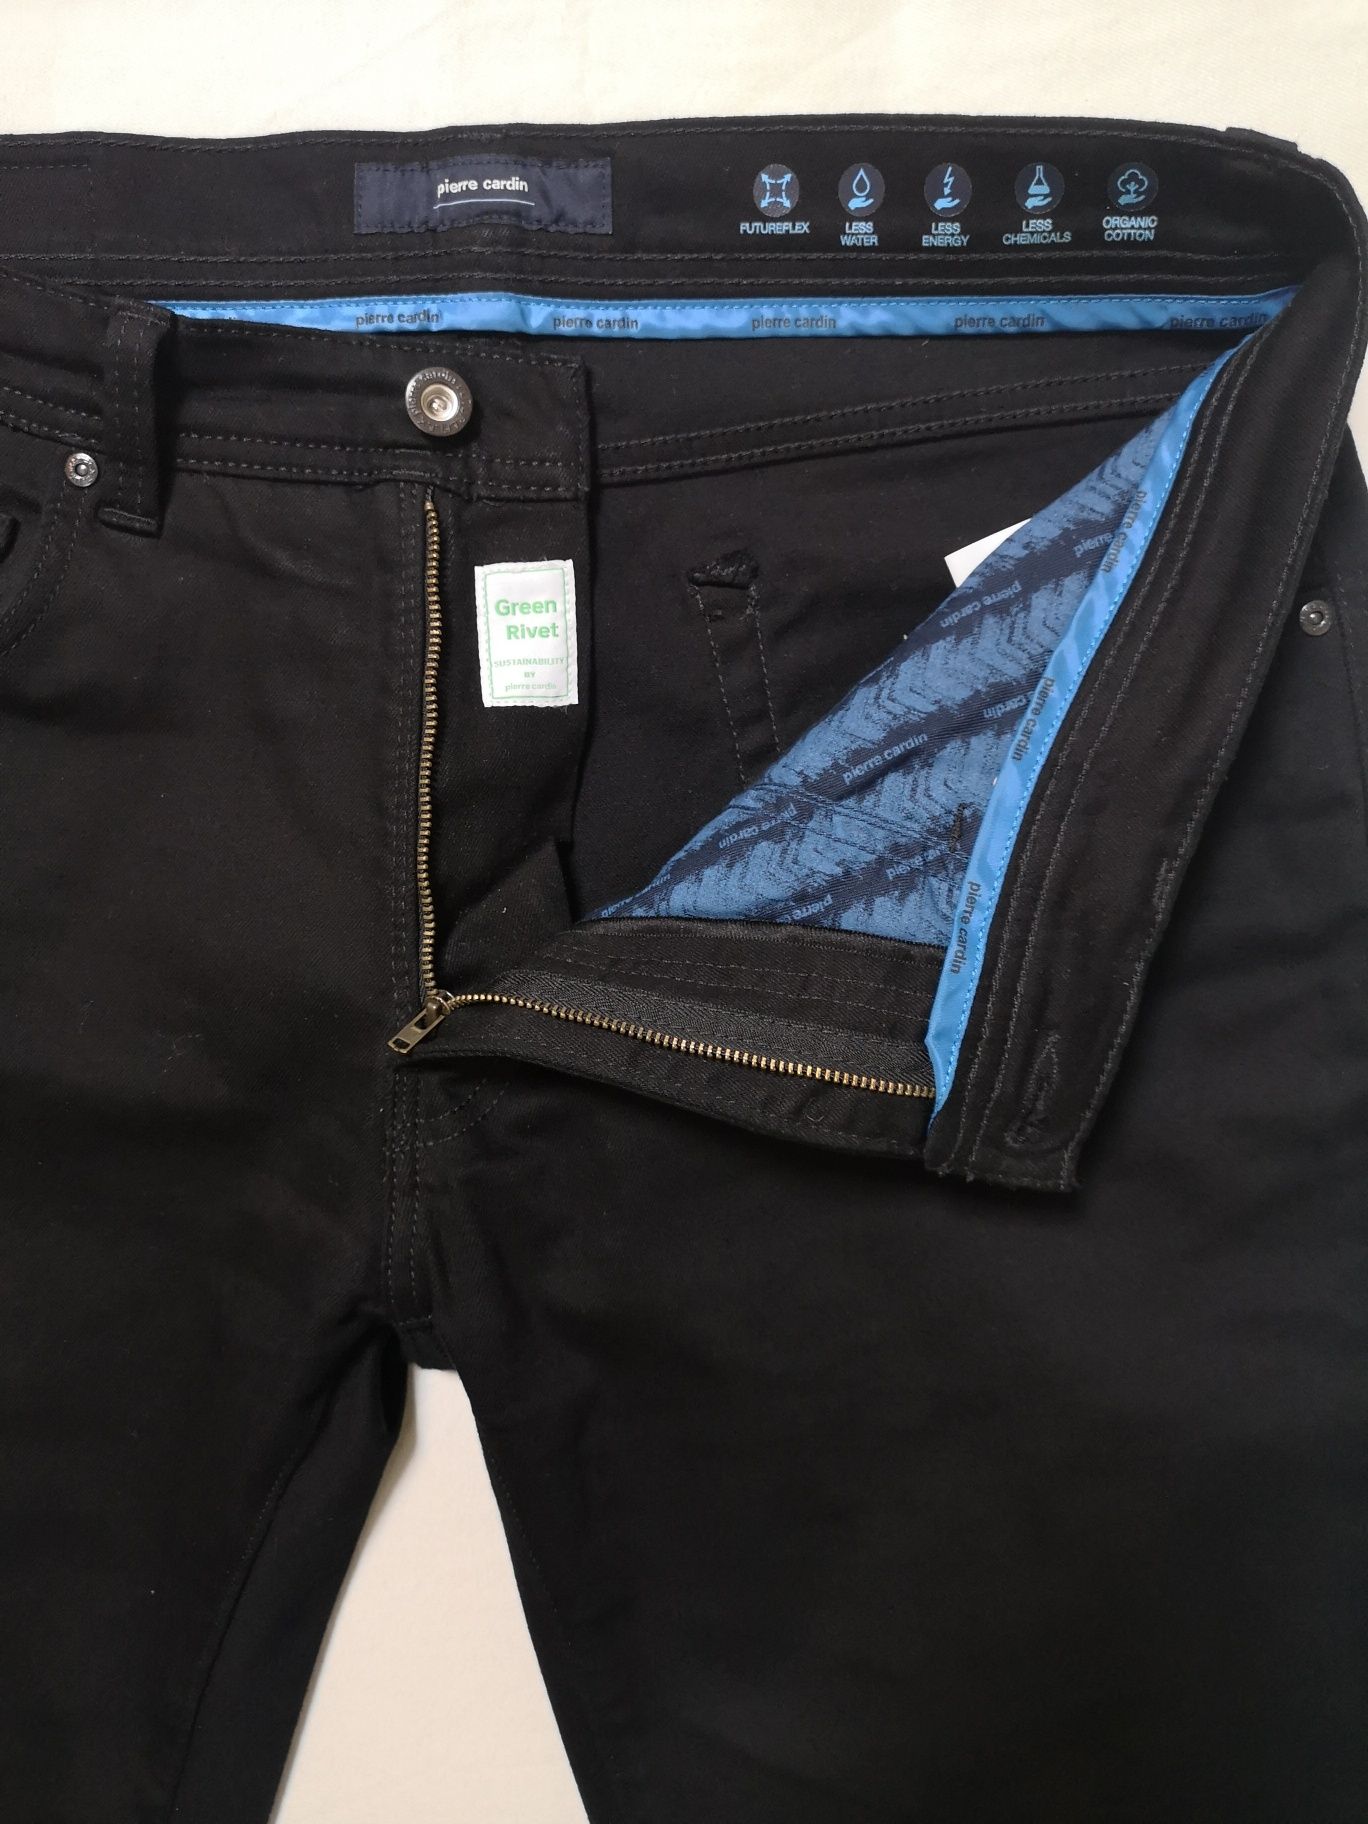 Pierre Cardin jeans W36/ L32